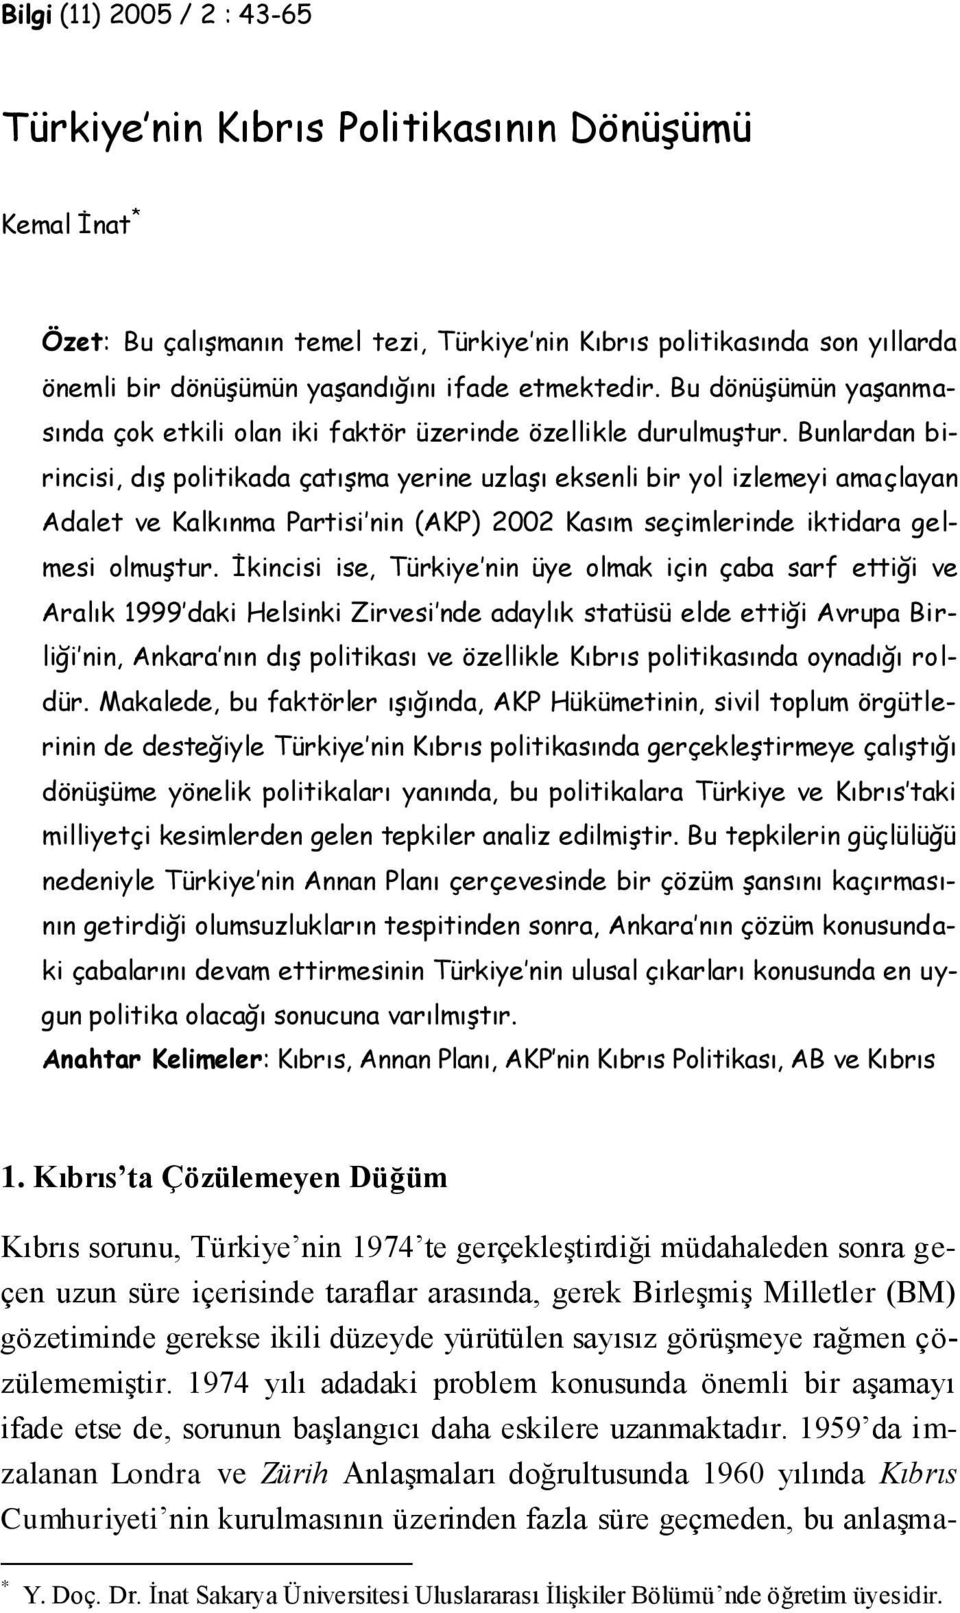 Bunlardan birincisi, dış politikada çatışma yerine uzlaşı eksenli bir yol izlemeyi amaçlayan Adalet ve Kalkınma Partisi nin (AKP) 2002 Kasım seçimlerinde iktidara gelmesi olmuştur.